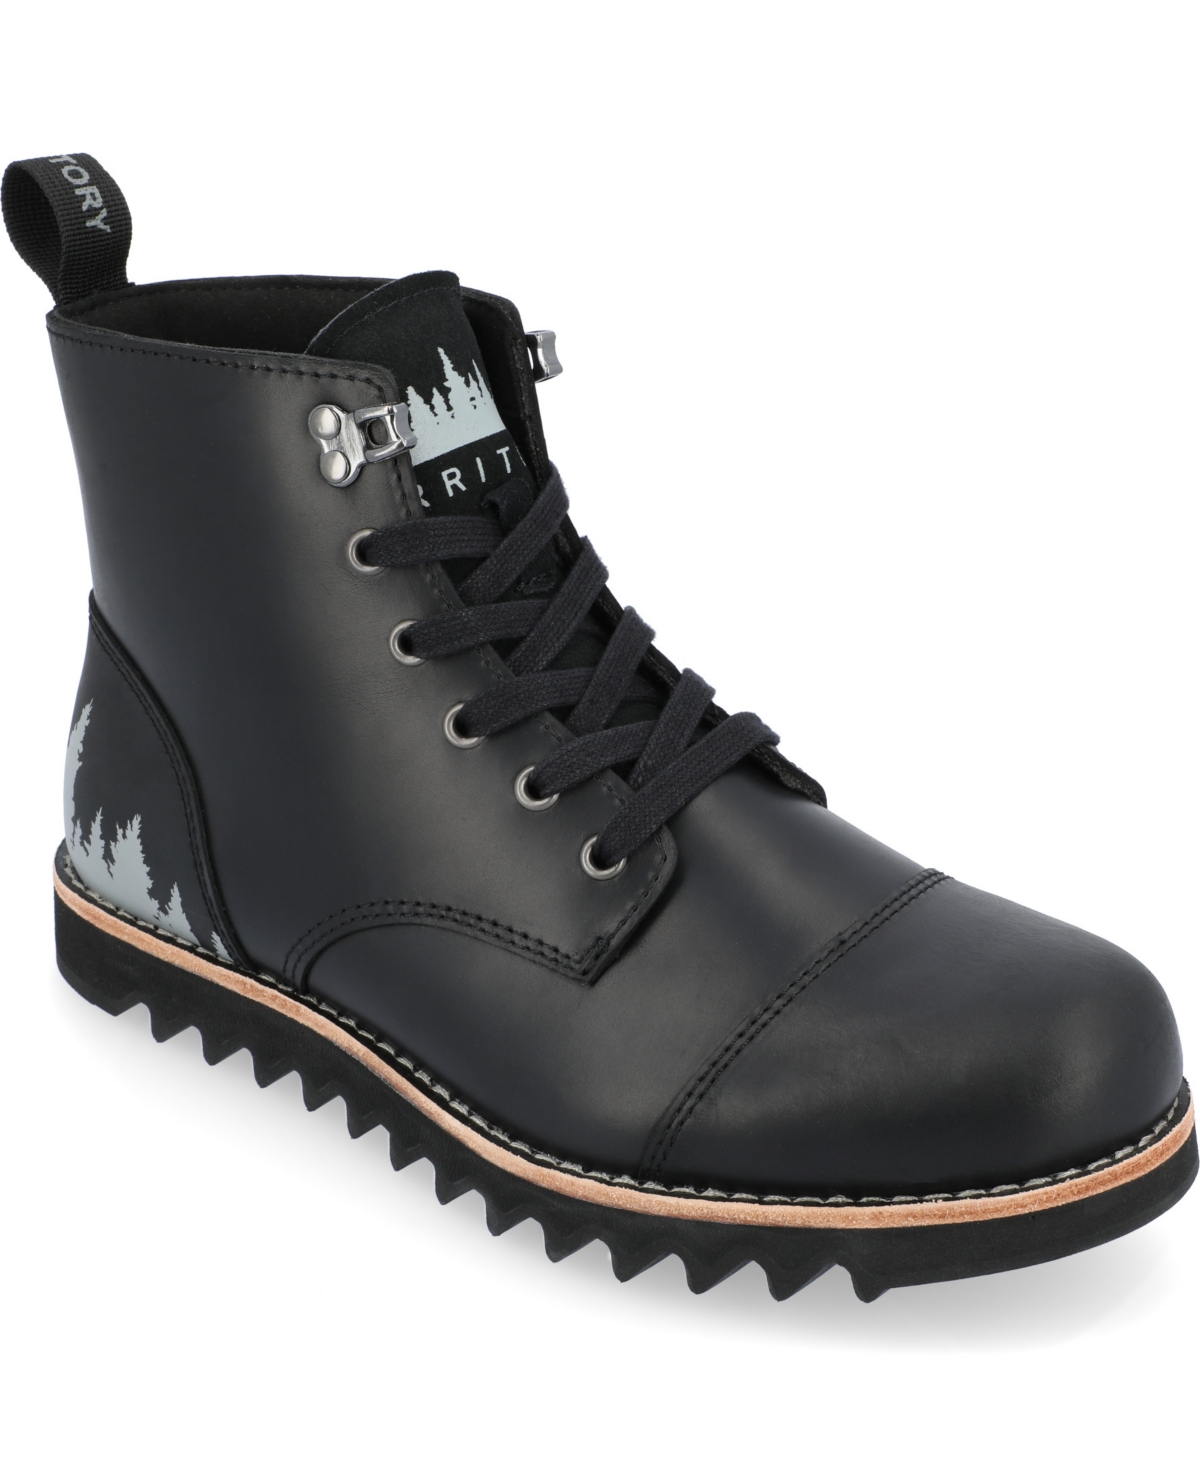 Men's Zion Tru Comfort Foam Lace-Up Water Resistant Ankle Boots - Black